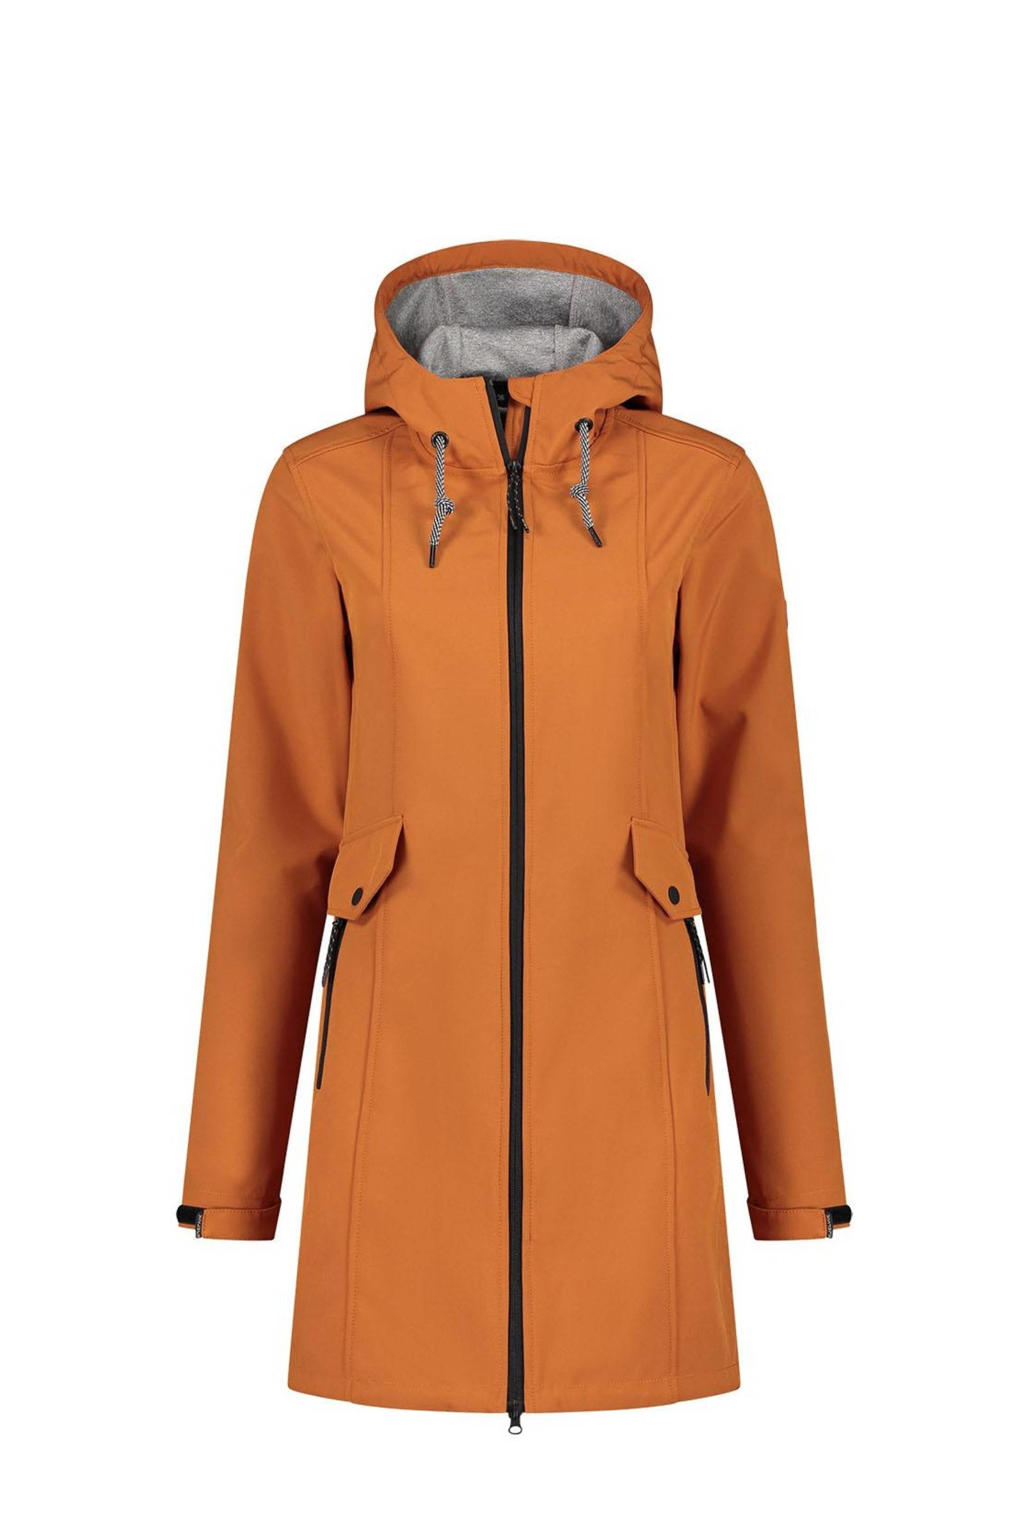 Oranje dames Kjelvik outdoor jas Britt van polyester met lange mouwen, capuchon en rits met windvanger